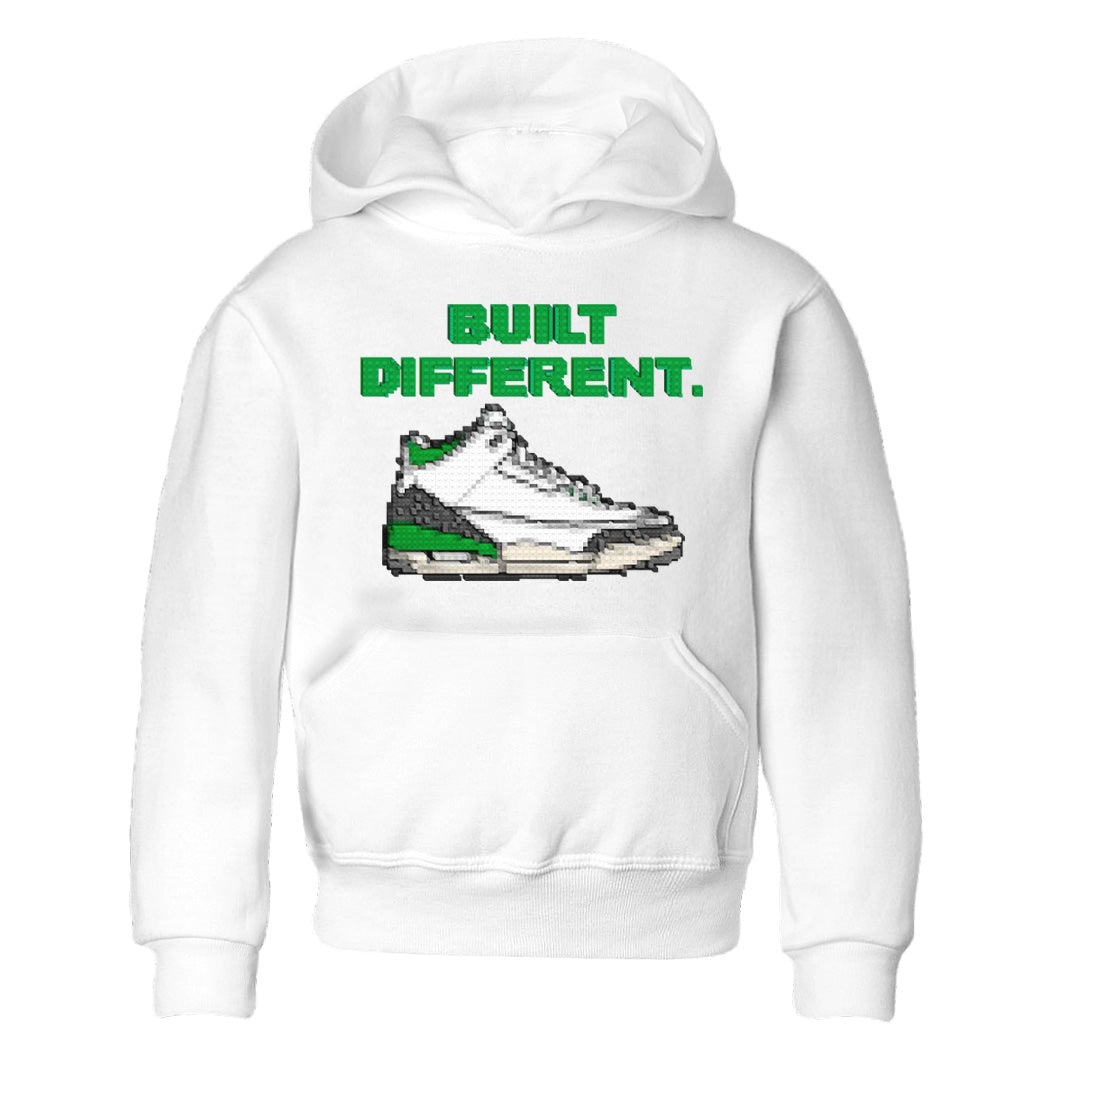 Air Jordan 3 Lucky Green Sneaker Tees Drip Gear Zone Built Different Sneaker Tees Air Jordan 3 WMNS Lucky Green Shirt Kids Shirts White 2